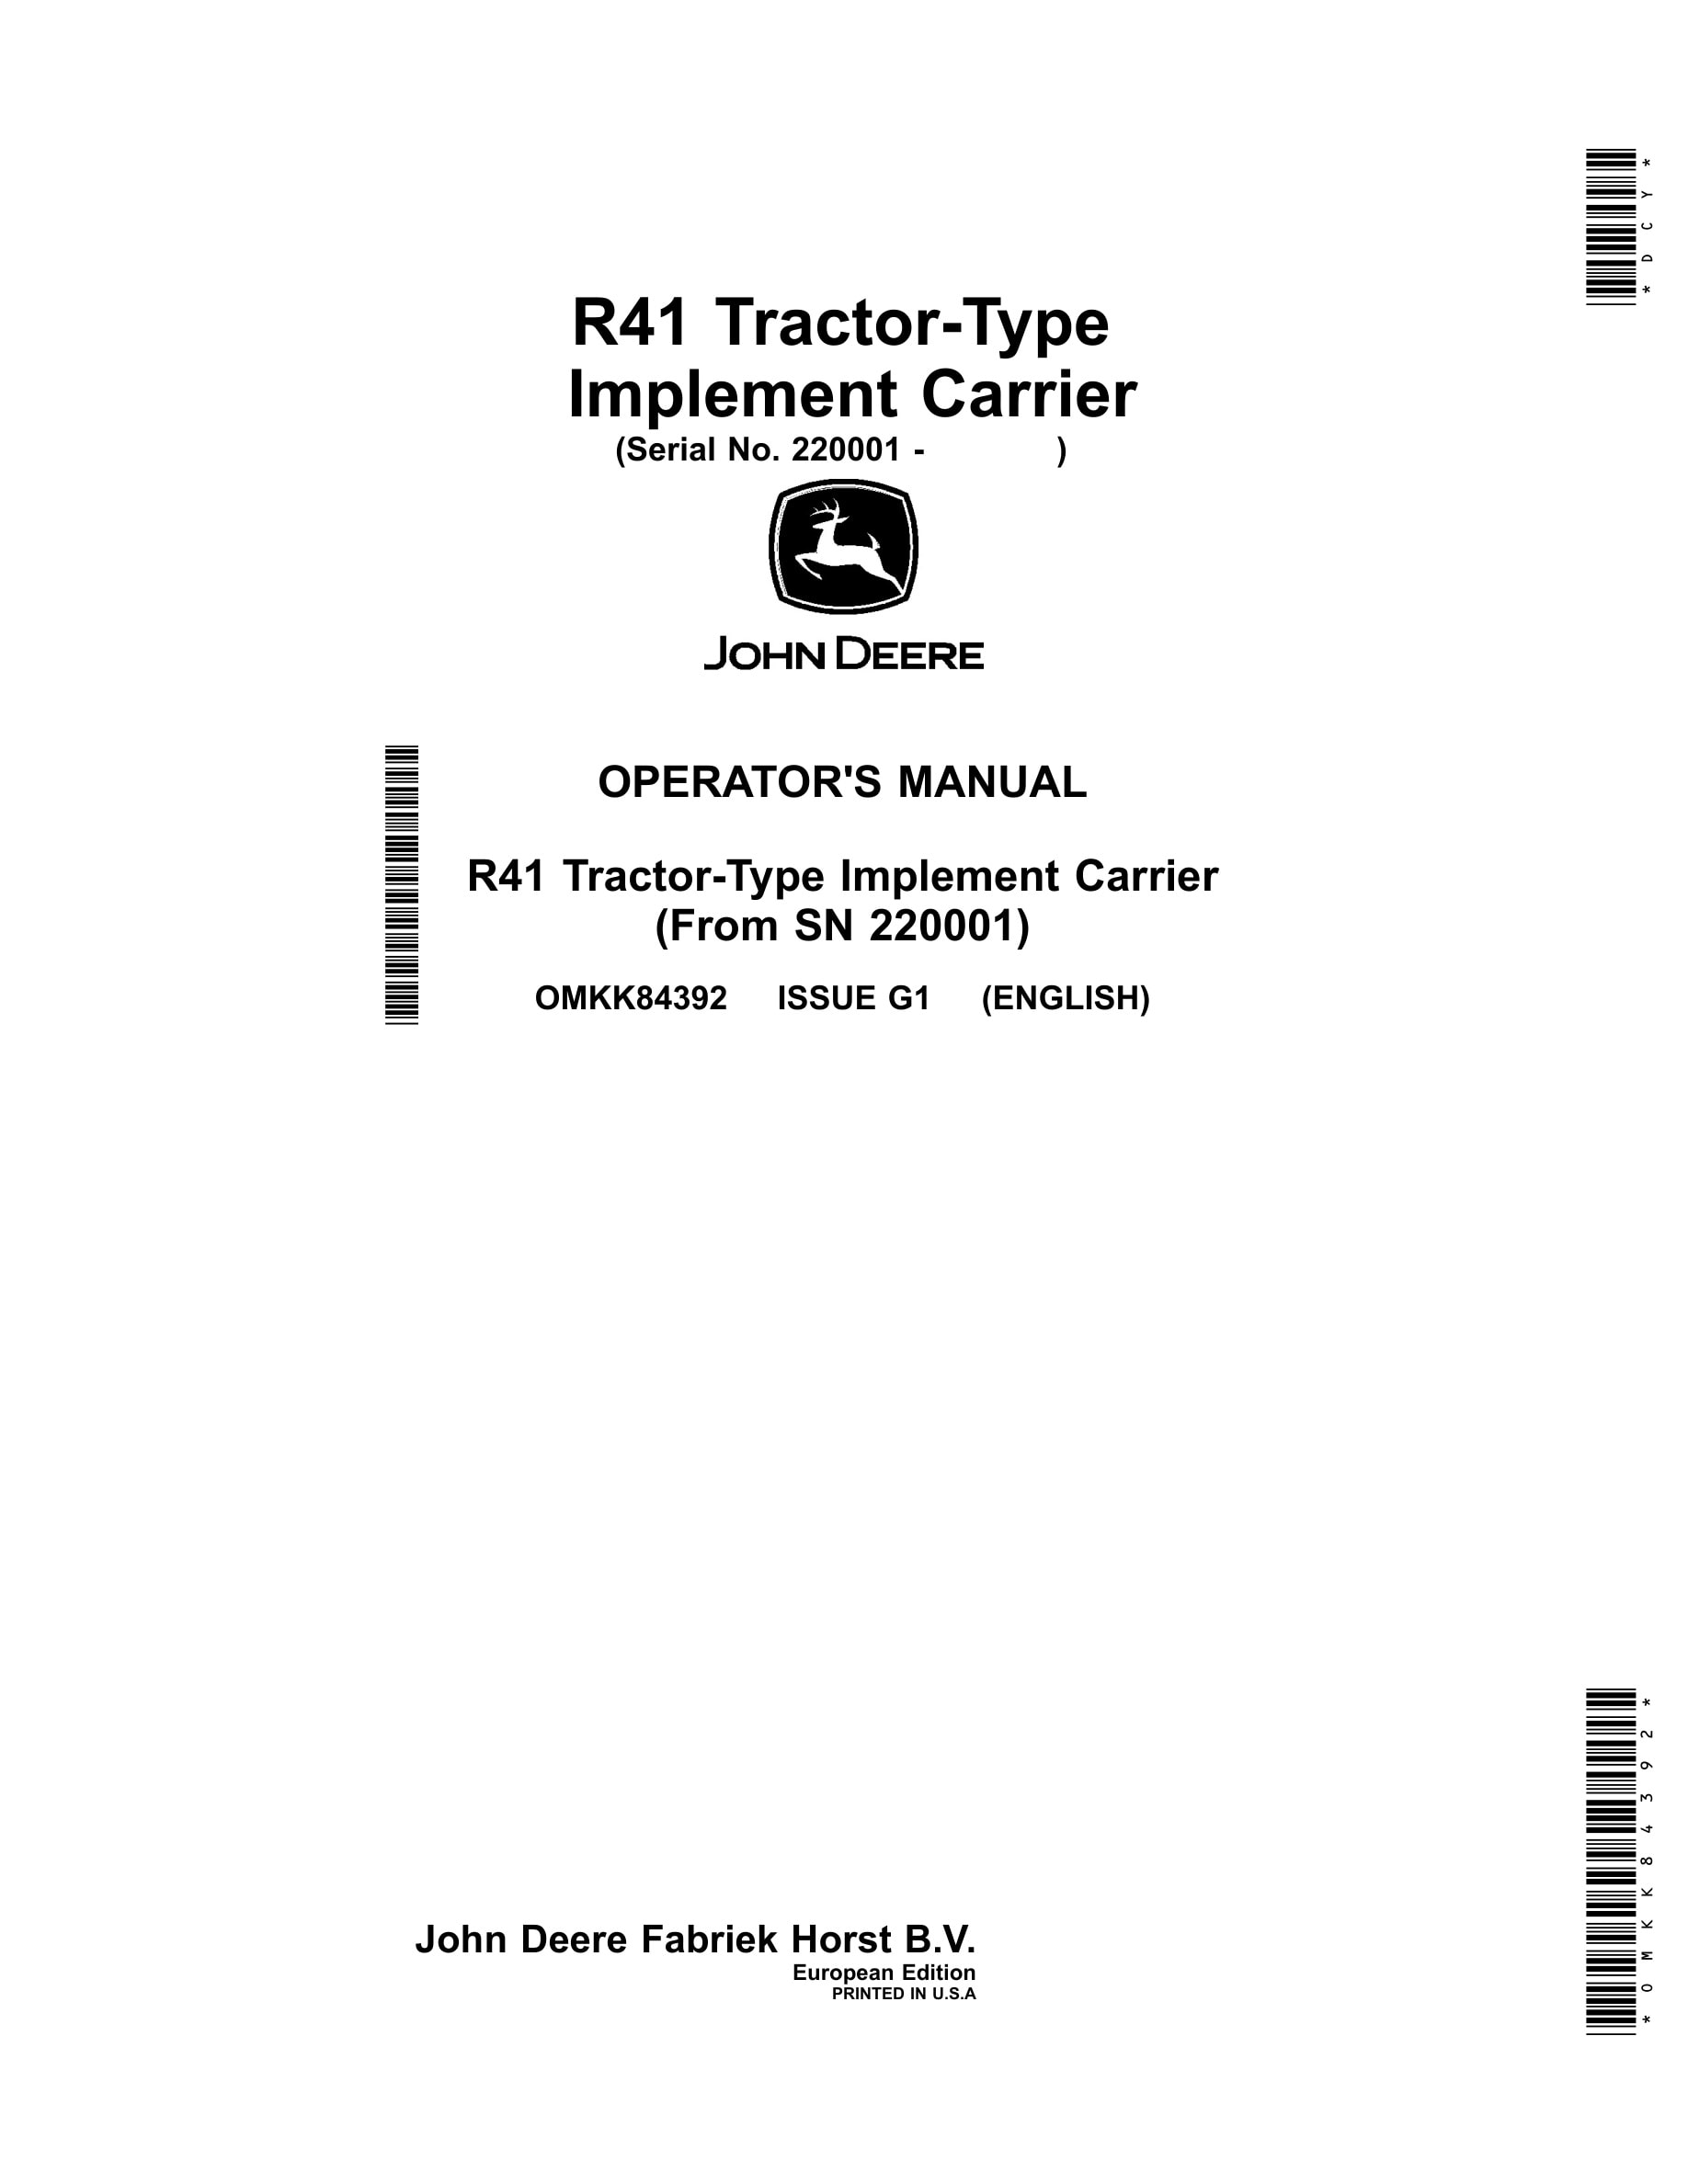 John Deere R41 Tractors Operator Manual type Implement Carrier Omkk84392-1